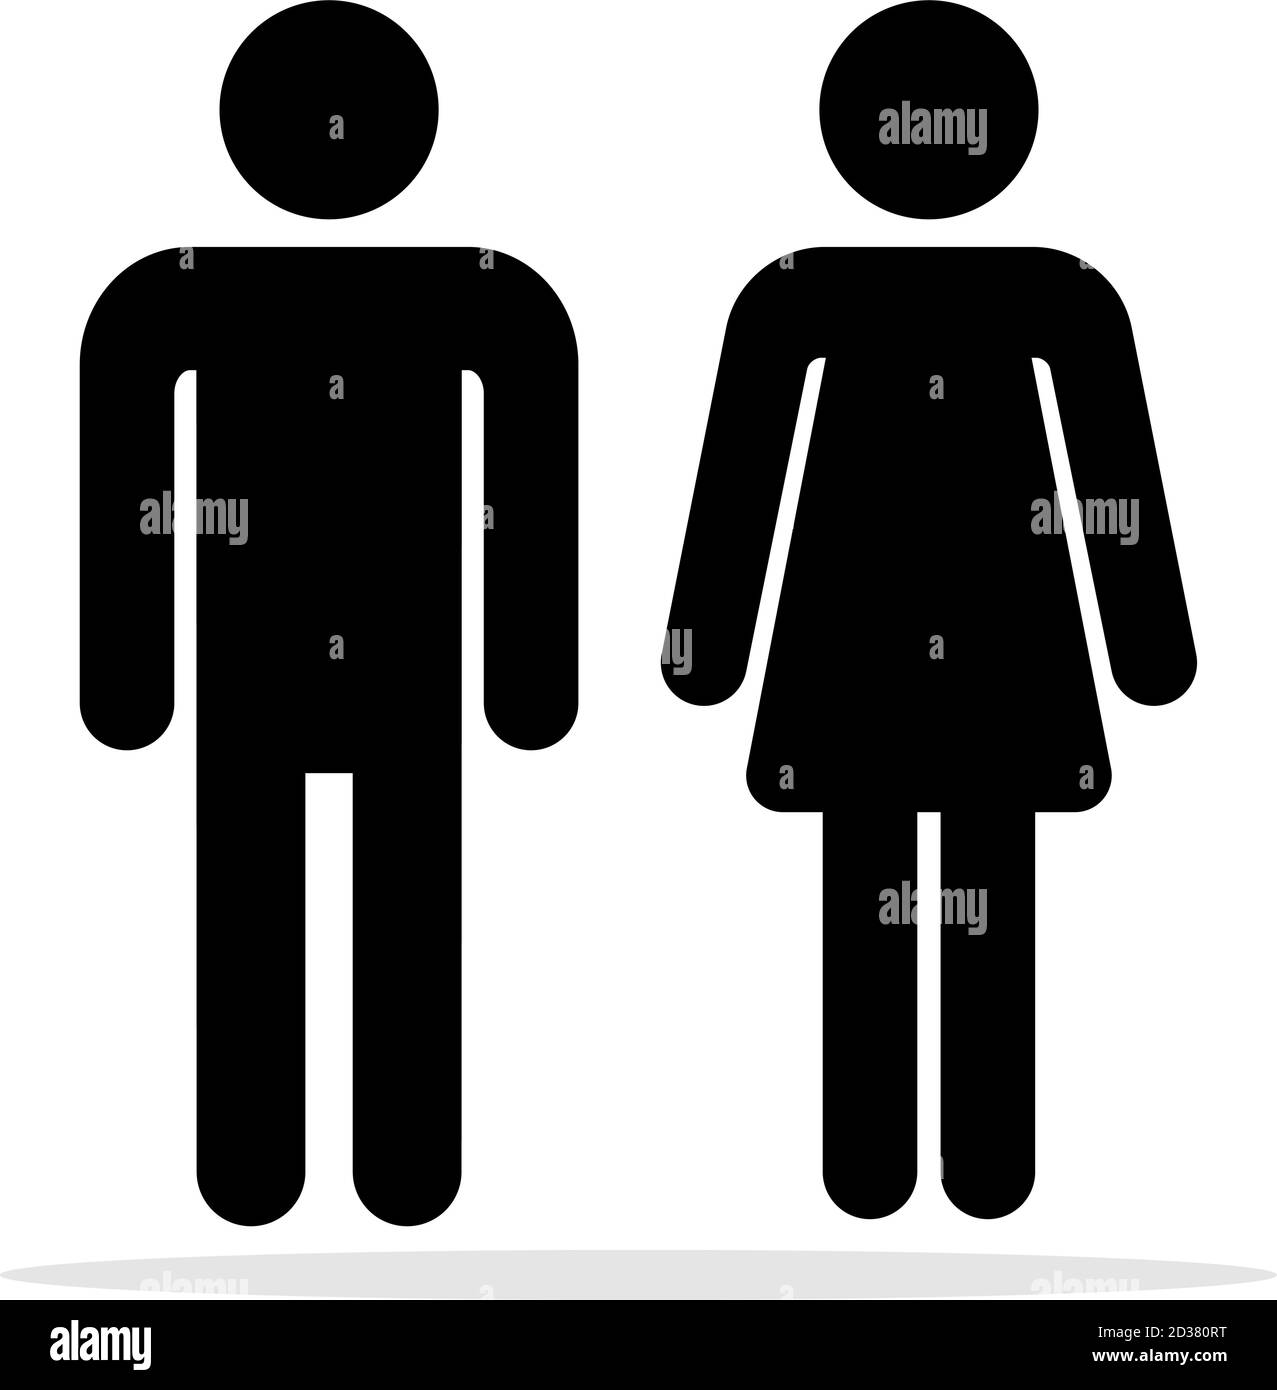 Personas iconos de baño. Símbolos del inodoro de hombres y mujeres, señales  vectoriales de los baños de mujeres y hombres, siluetas de mujeres y  hombres para WC, pictogramas de parejas de artículos